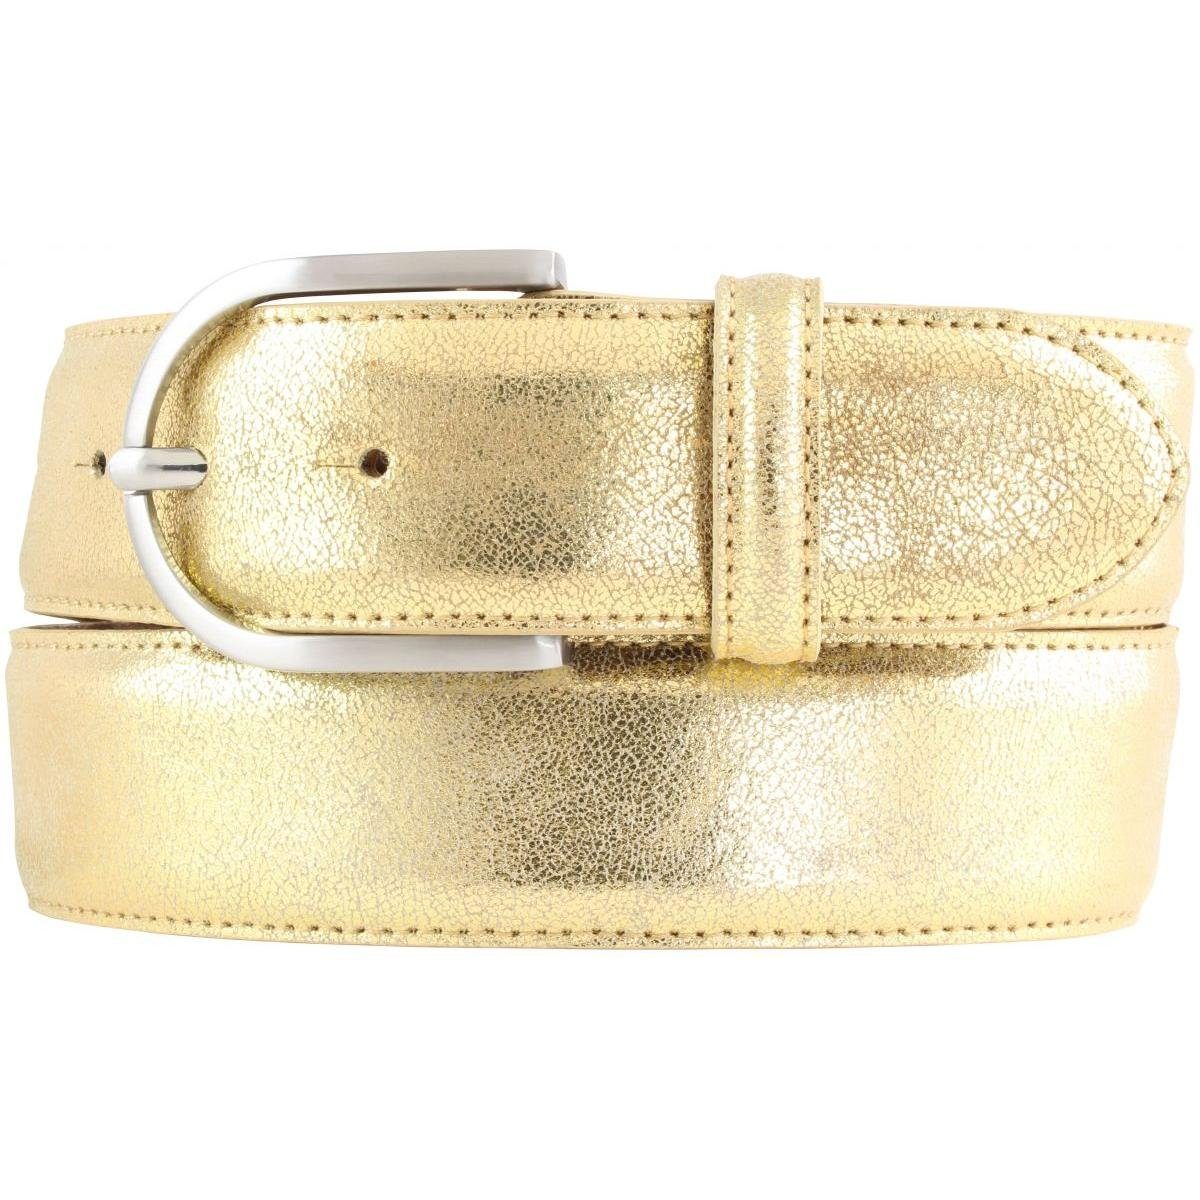 BELTINGER Ledergürtel Damen-Gürtel mit Metall-Optik Echt Leder 4 cm - Leder-Gürtel Metallic- Gold, Silber